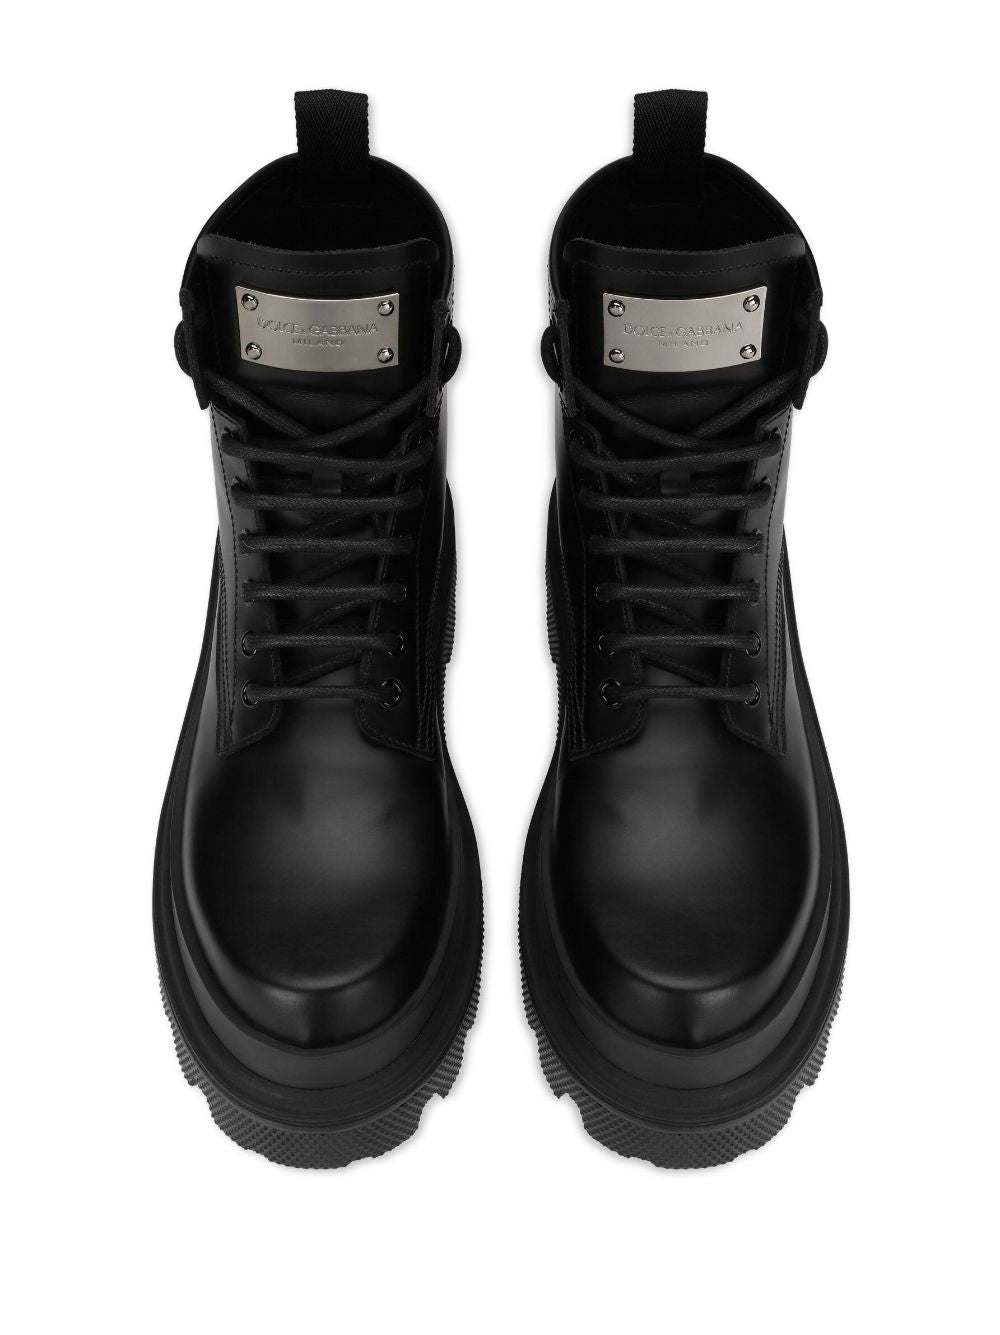 Dolce & Gabbana Dolce & Gabbana Boots Black